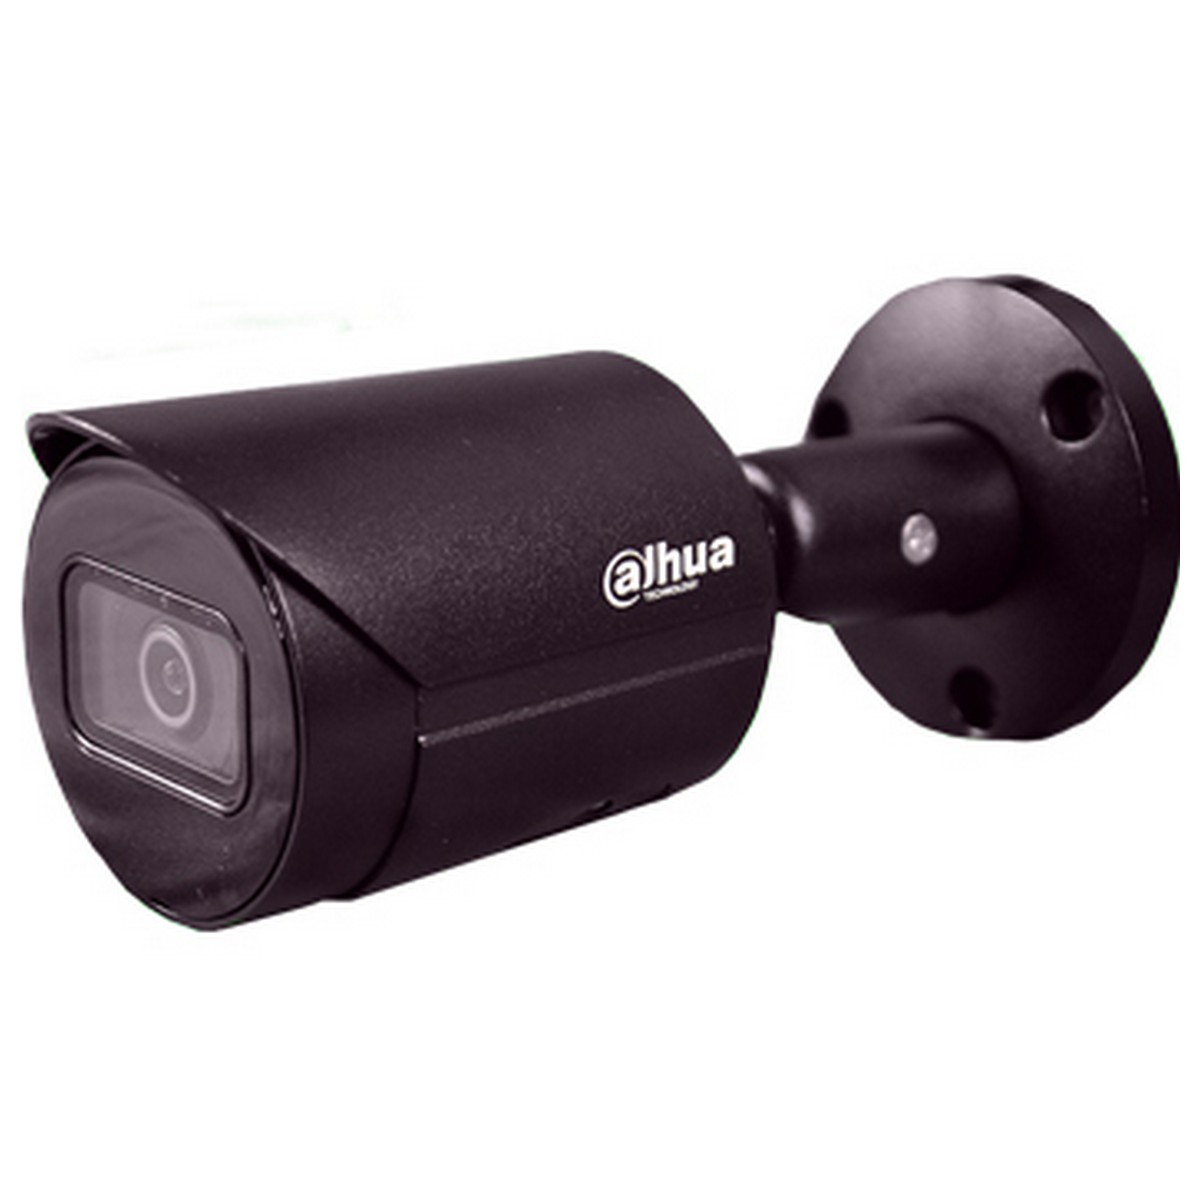 IP камера Dahua DH-IPC-HFW2531SP-S-S2-BE (2.8 мм)